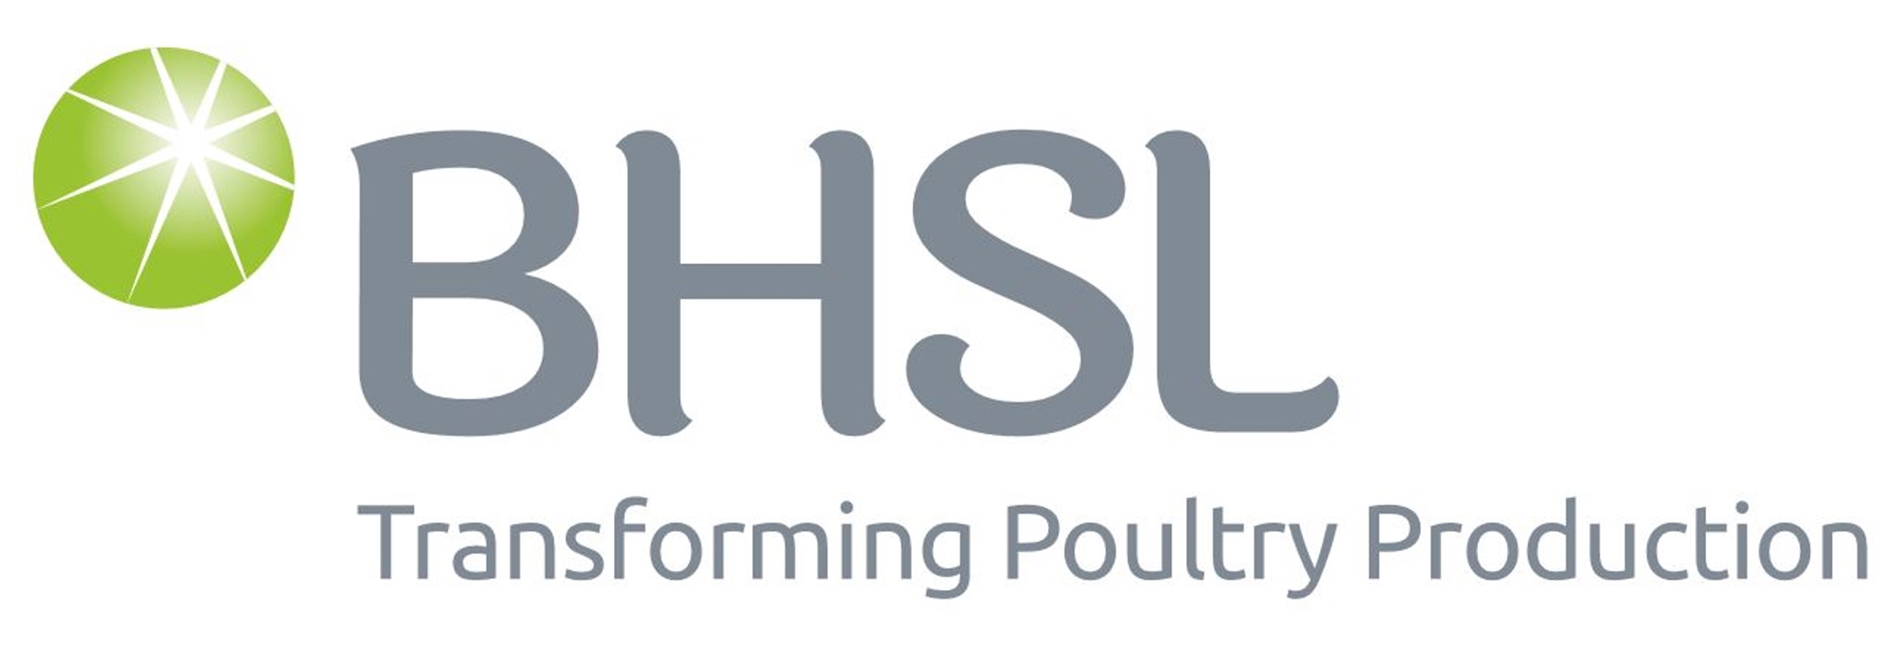 BHSL-Logo-1920x1080 kopya